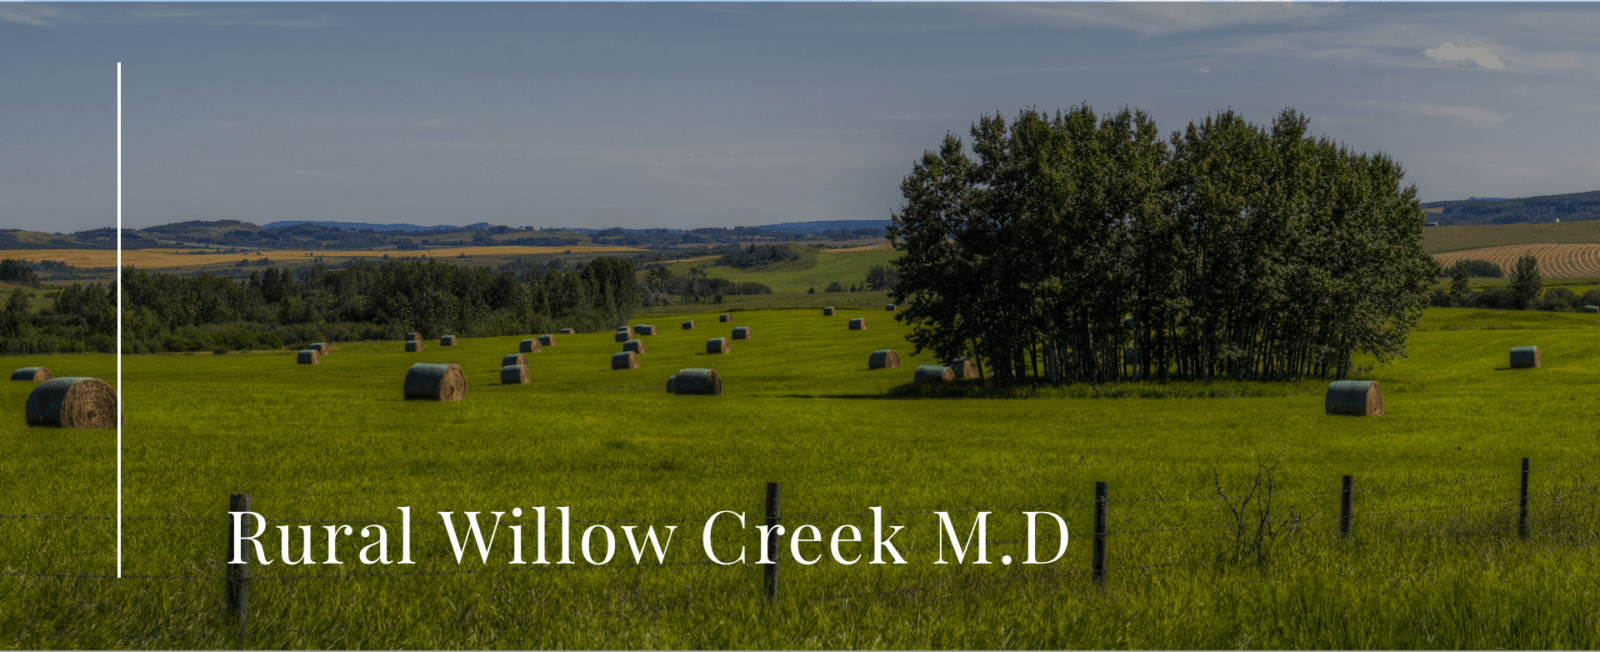 Rural Willow Creek